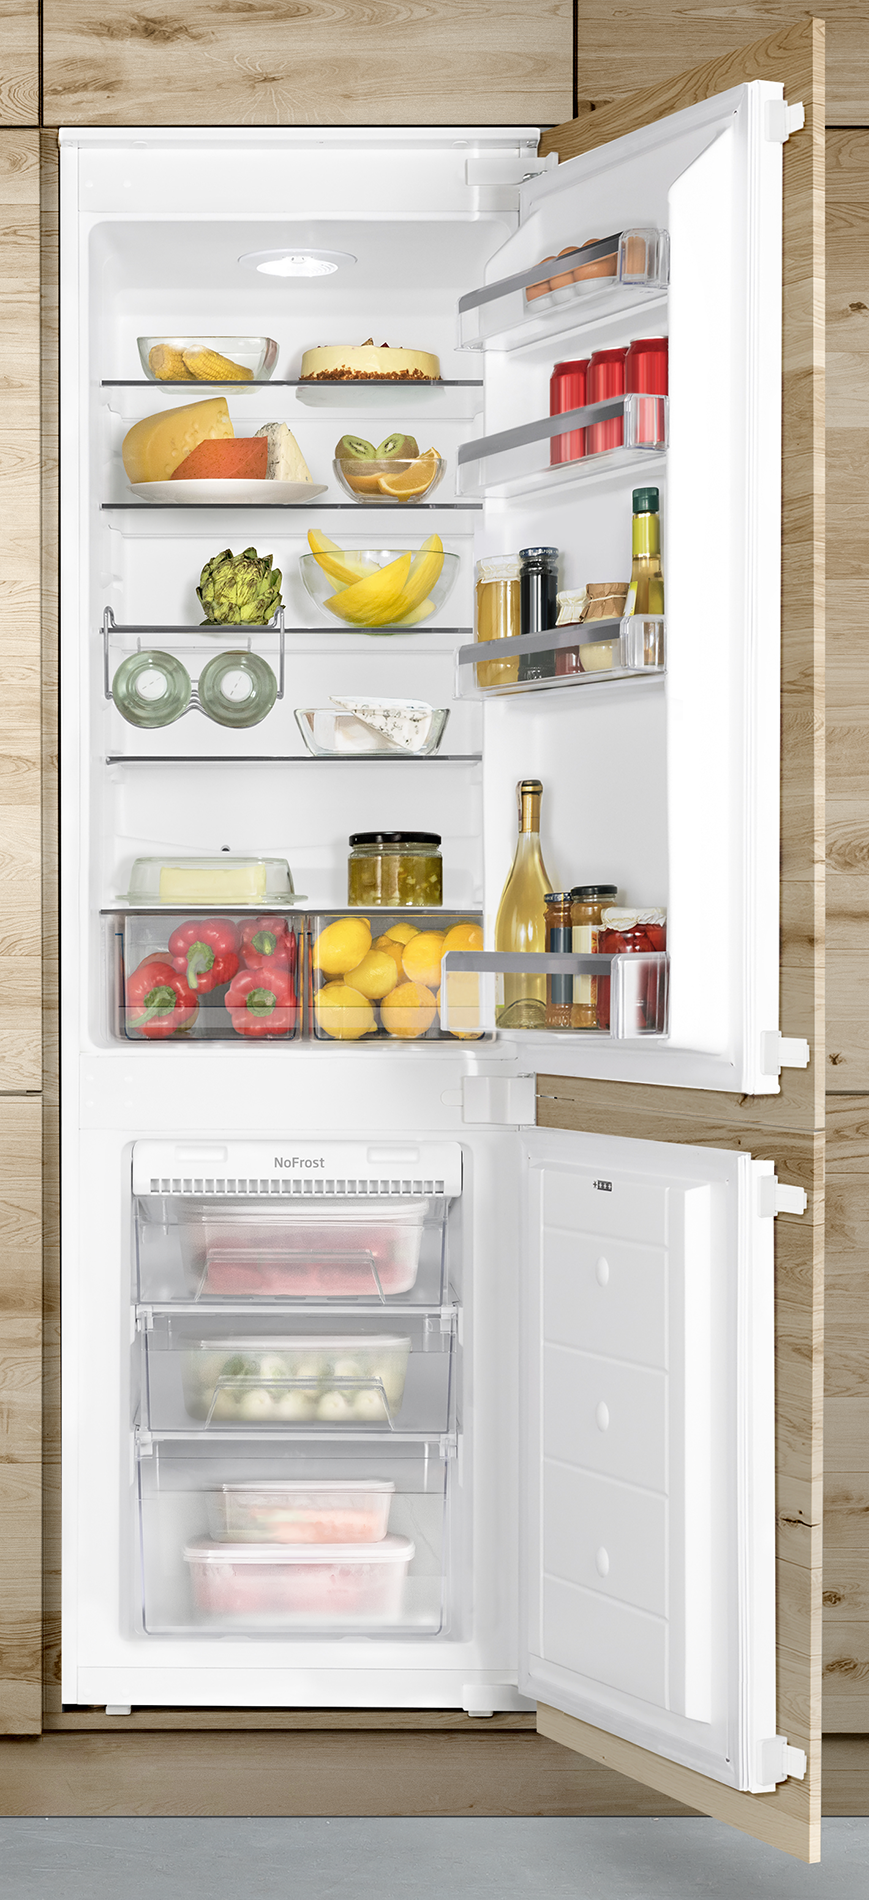 Frigorífico integrable BK3165.4F  Amica- Appliances: Los frigoríficos, los  lavavajillas, los hornos microondas